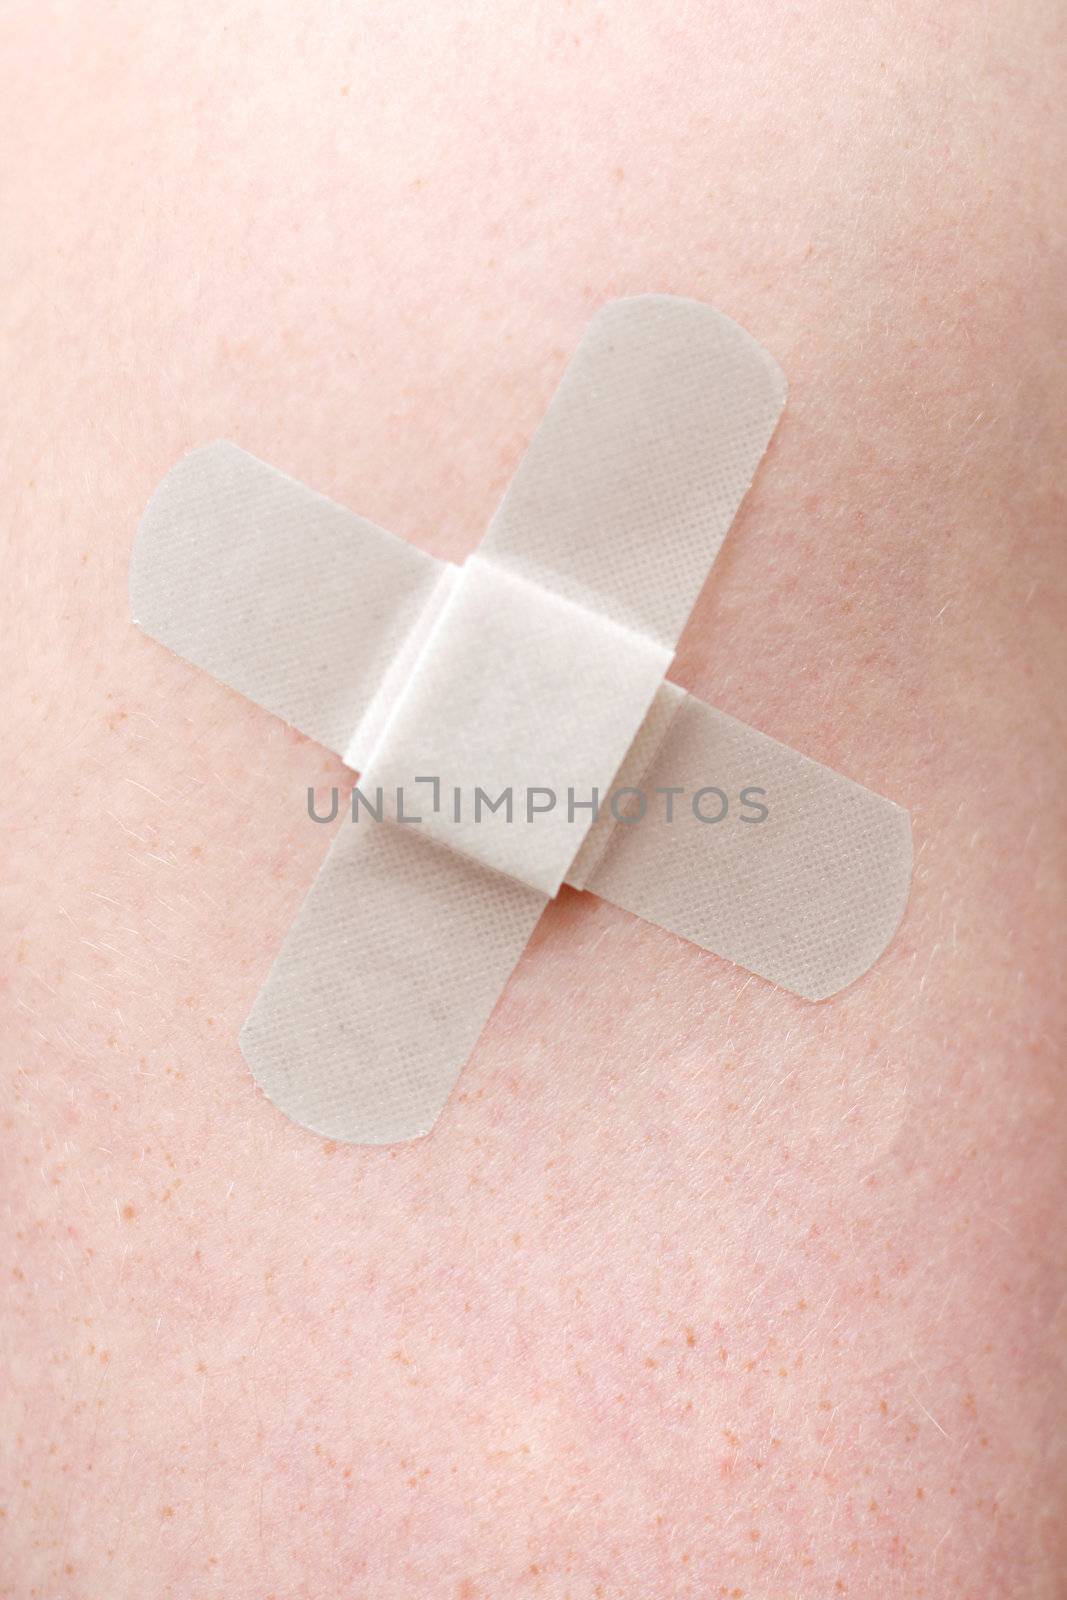 Close up of a bandage on skin